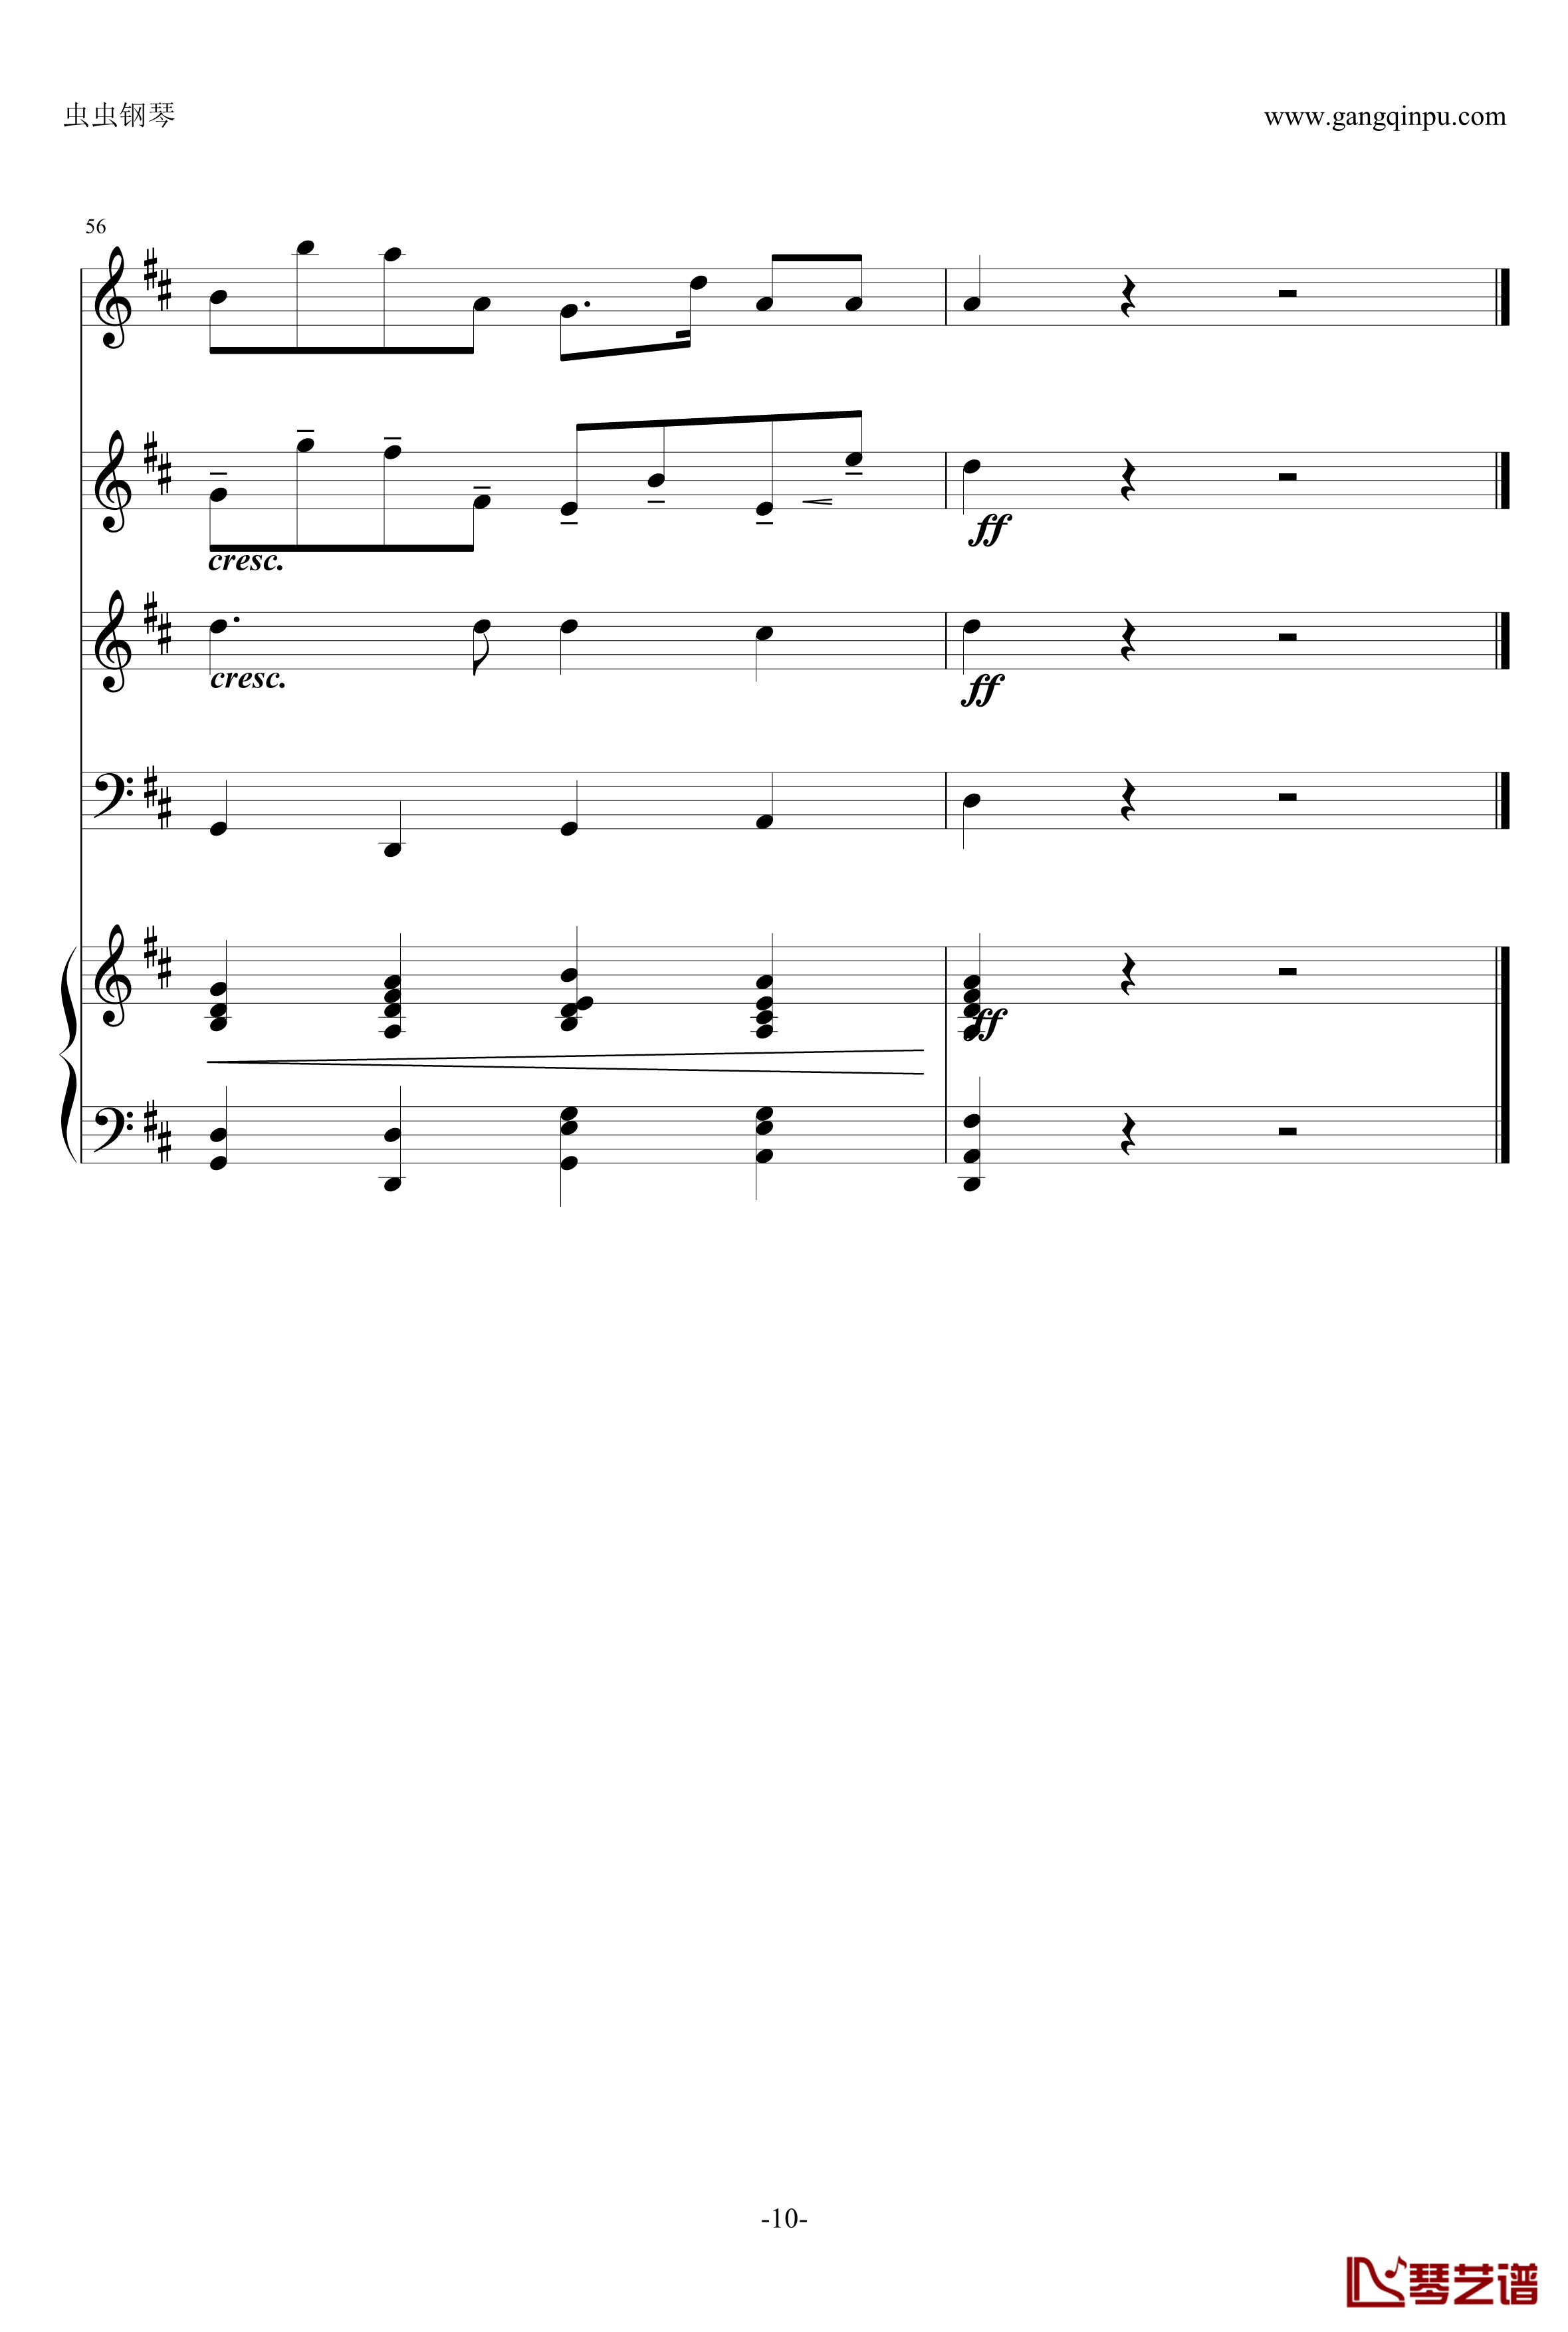 卡农钢琴谱-原版引进-帕赫贝尔-Pachelbel10